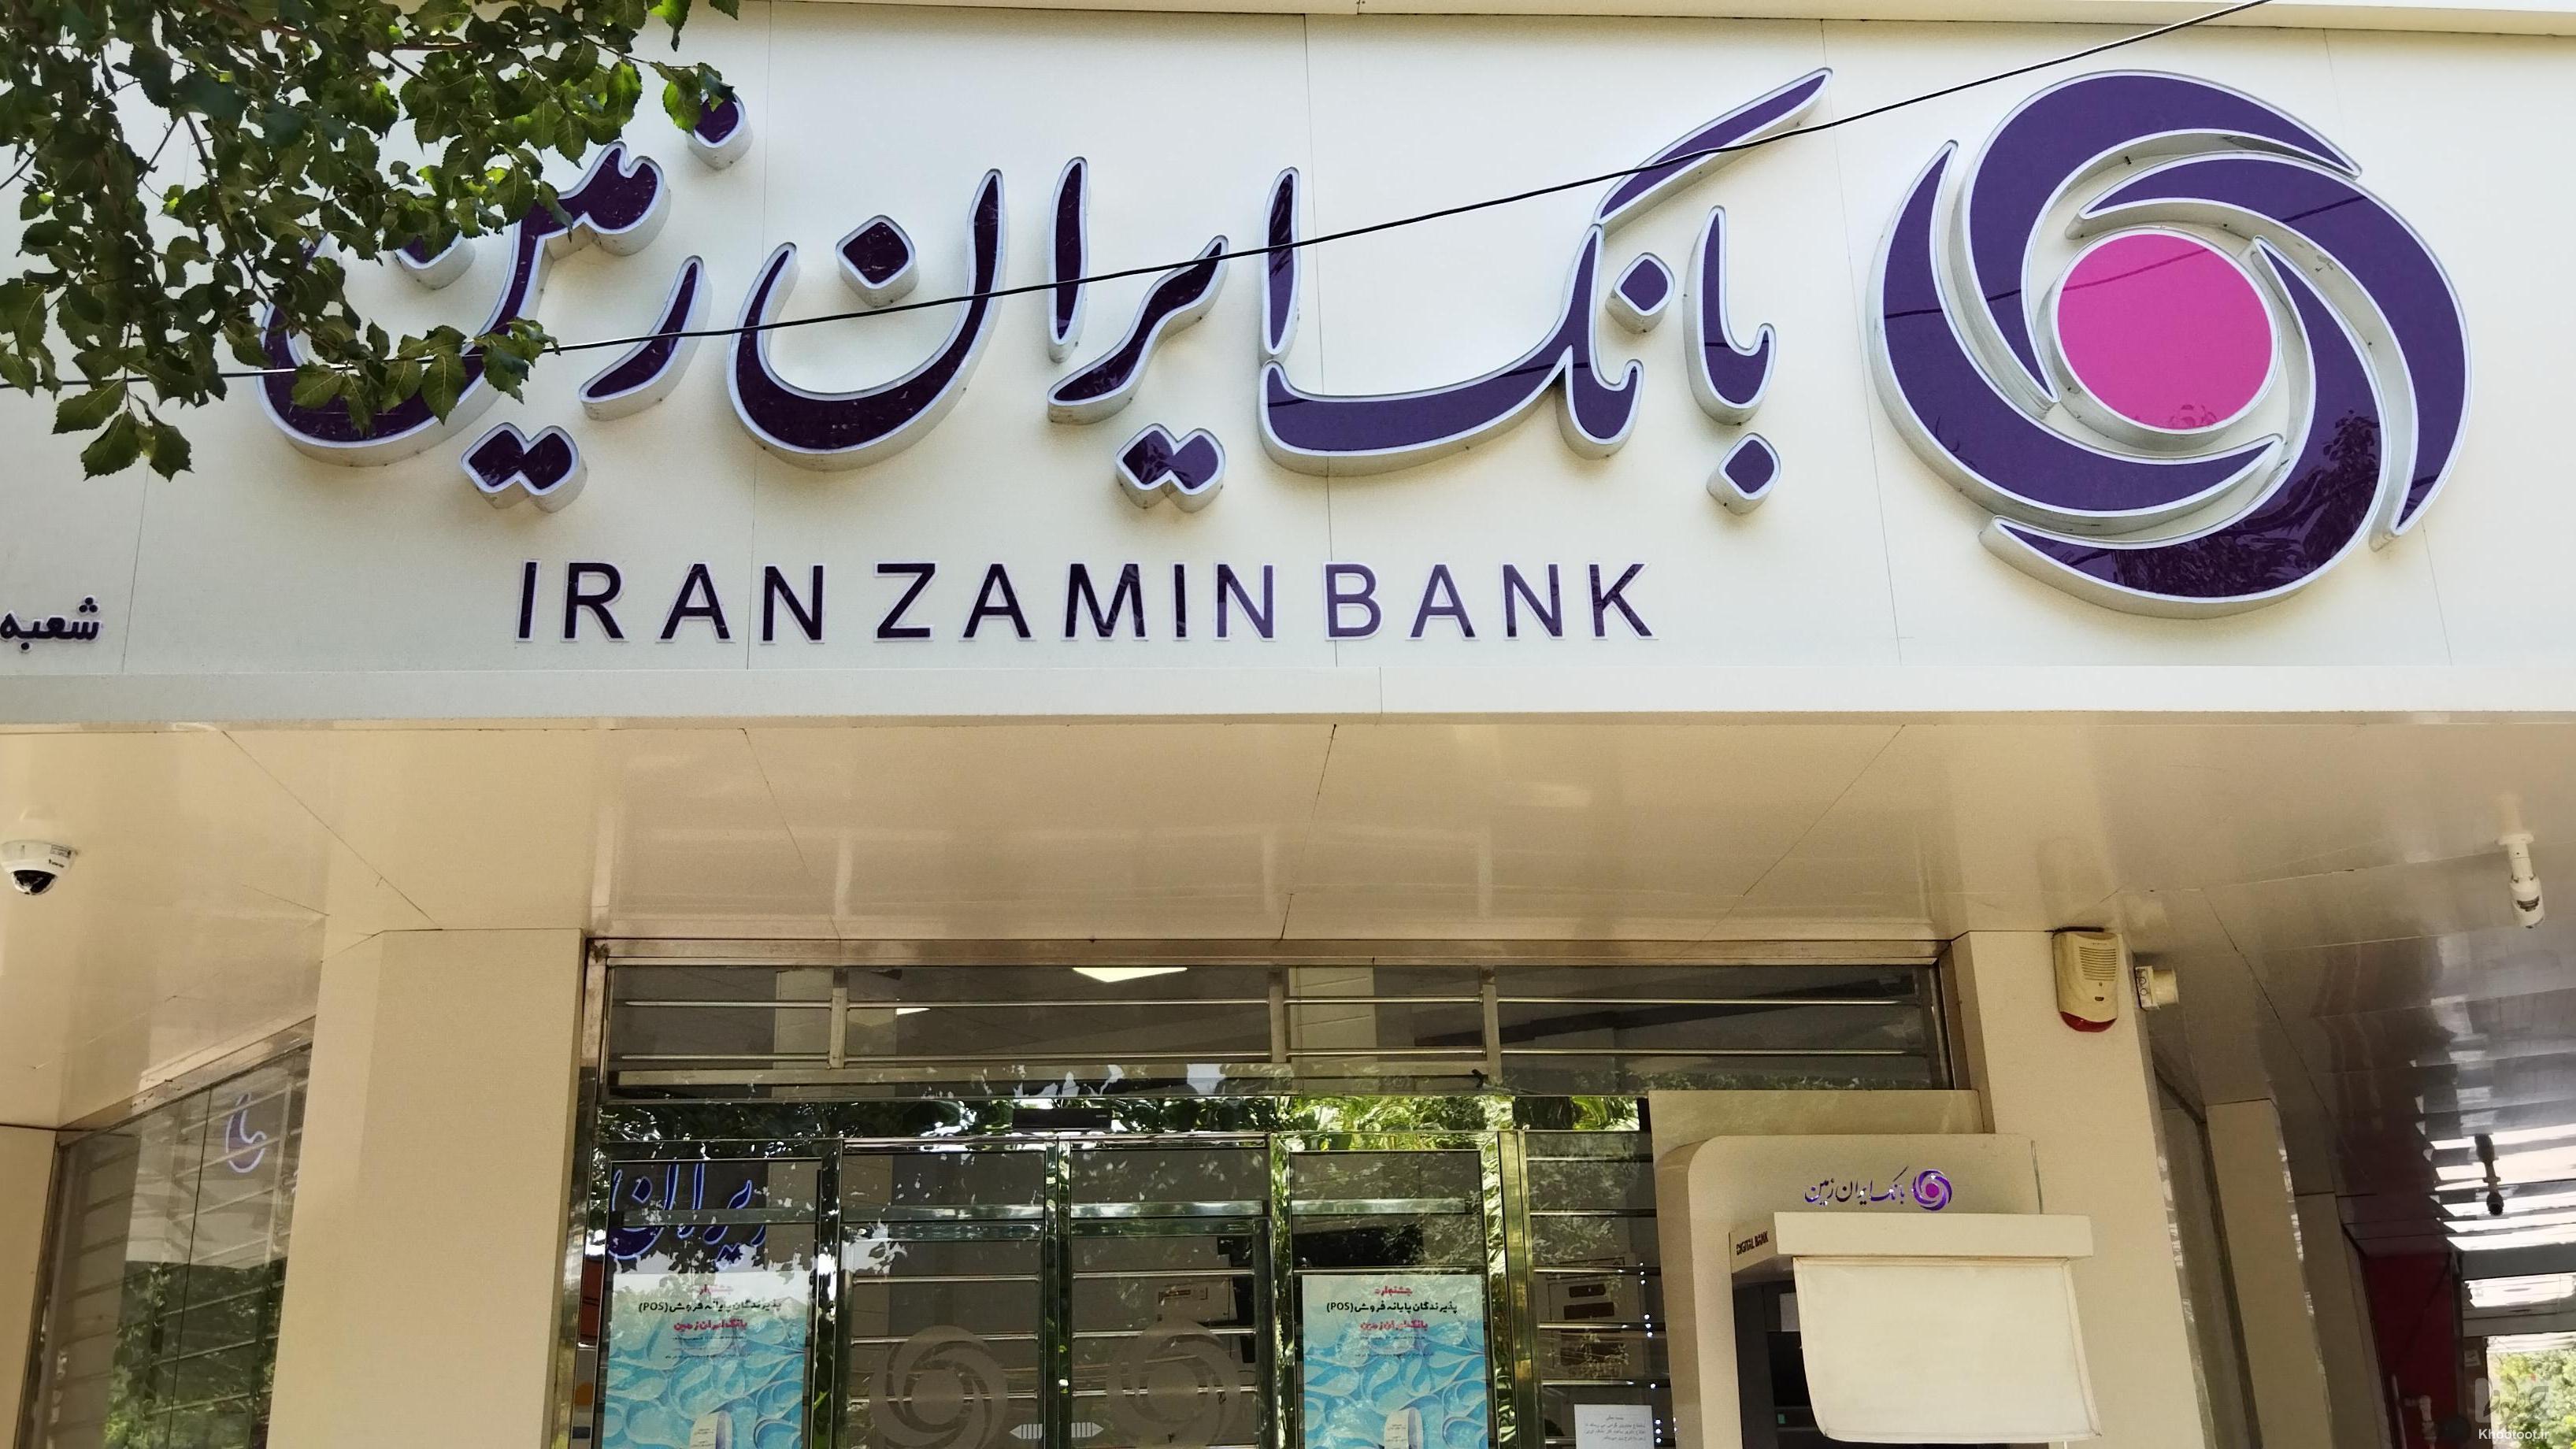 ارائه خدمات بانک ایران زمین براساس سبک زندگی مشتریان